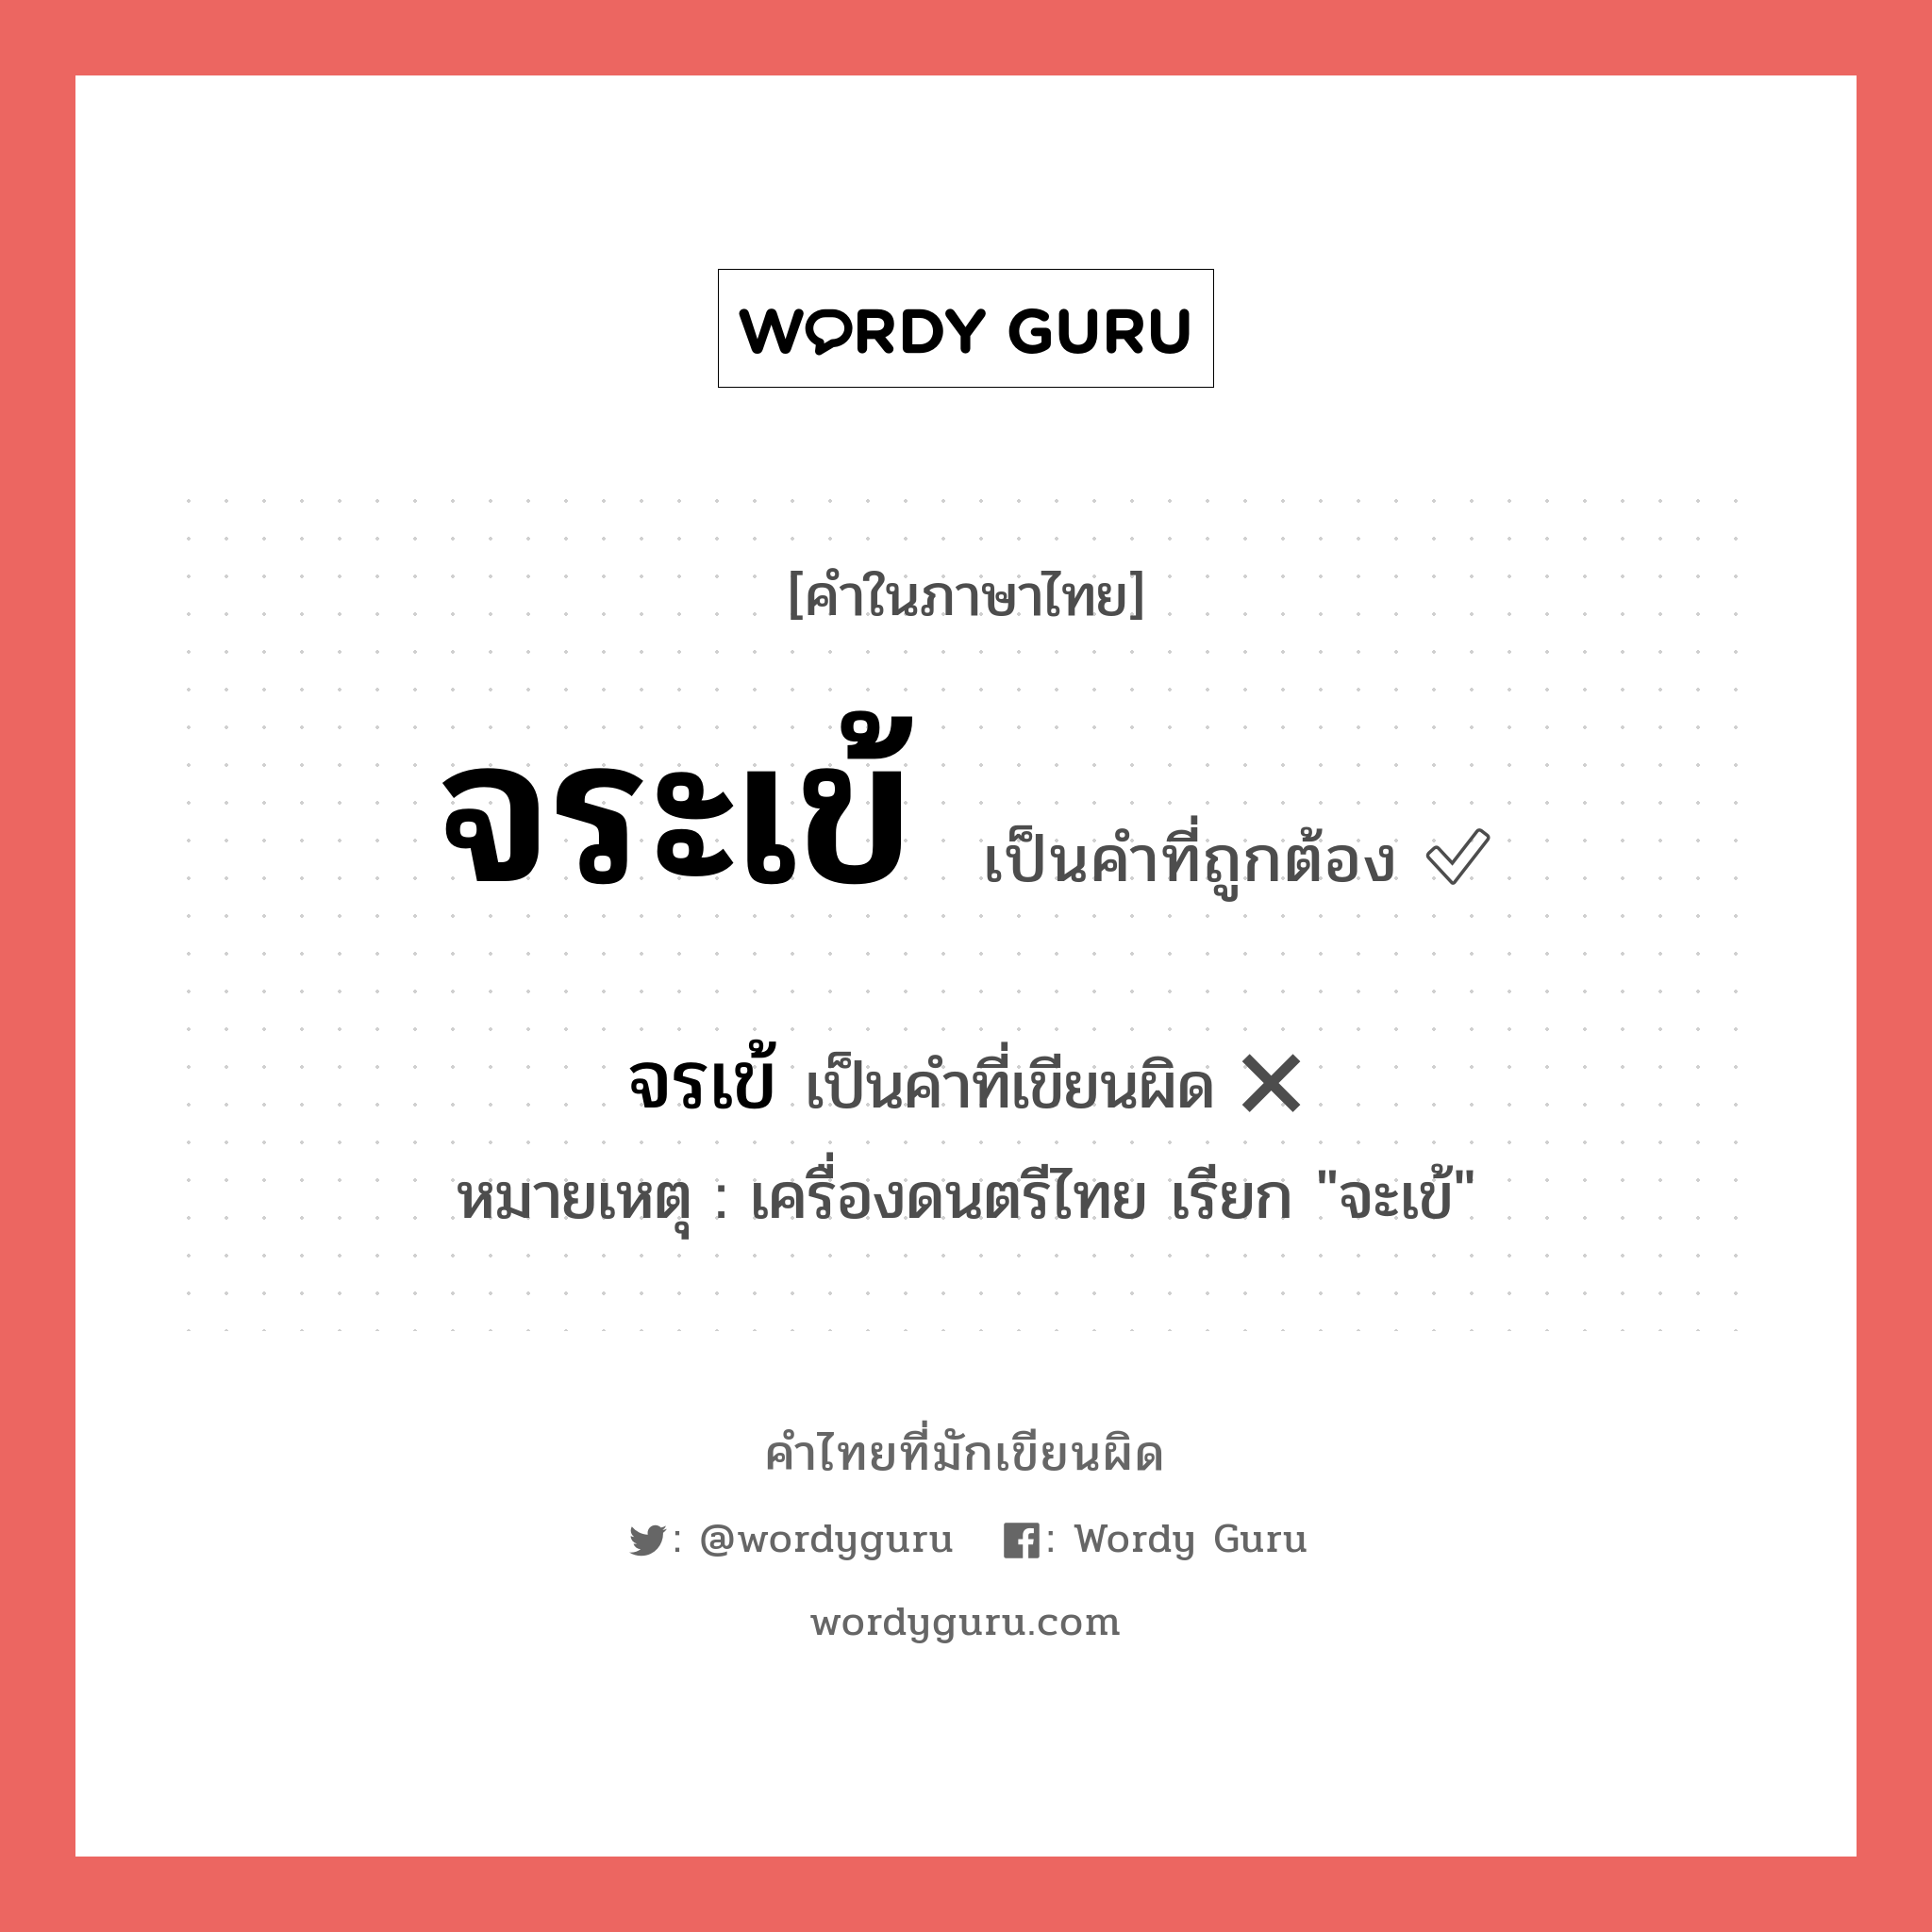 จระเข้ หรือ จรเข้ คำไหนเขียนถูก?, คำในภาษาไทยที่มักเขียนผิด จระเข้ คำที่ผิด ❌ จรเข้ หมายเหตุ เครื่องดนตรีไทย เรียก "จะเข้"